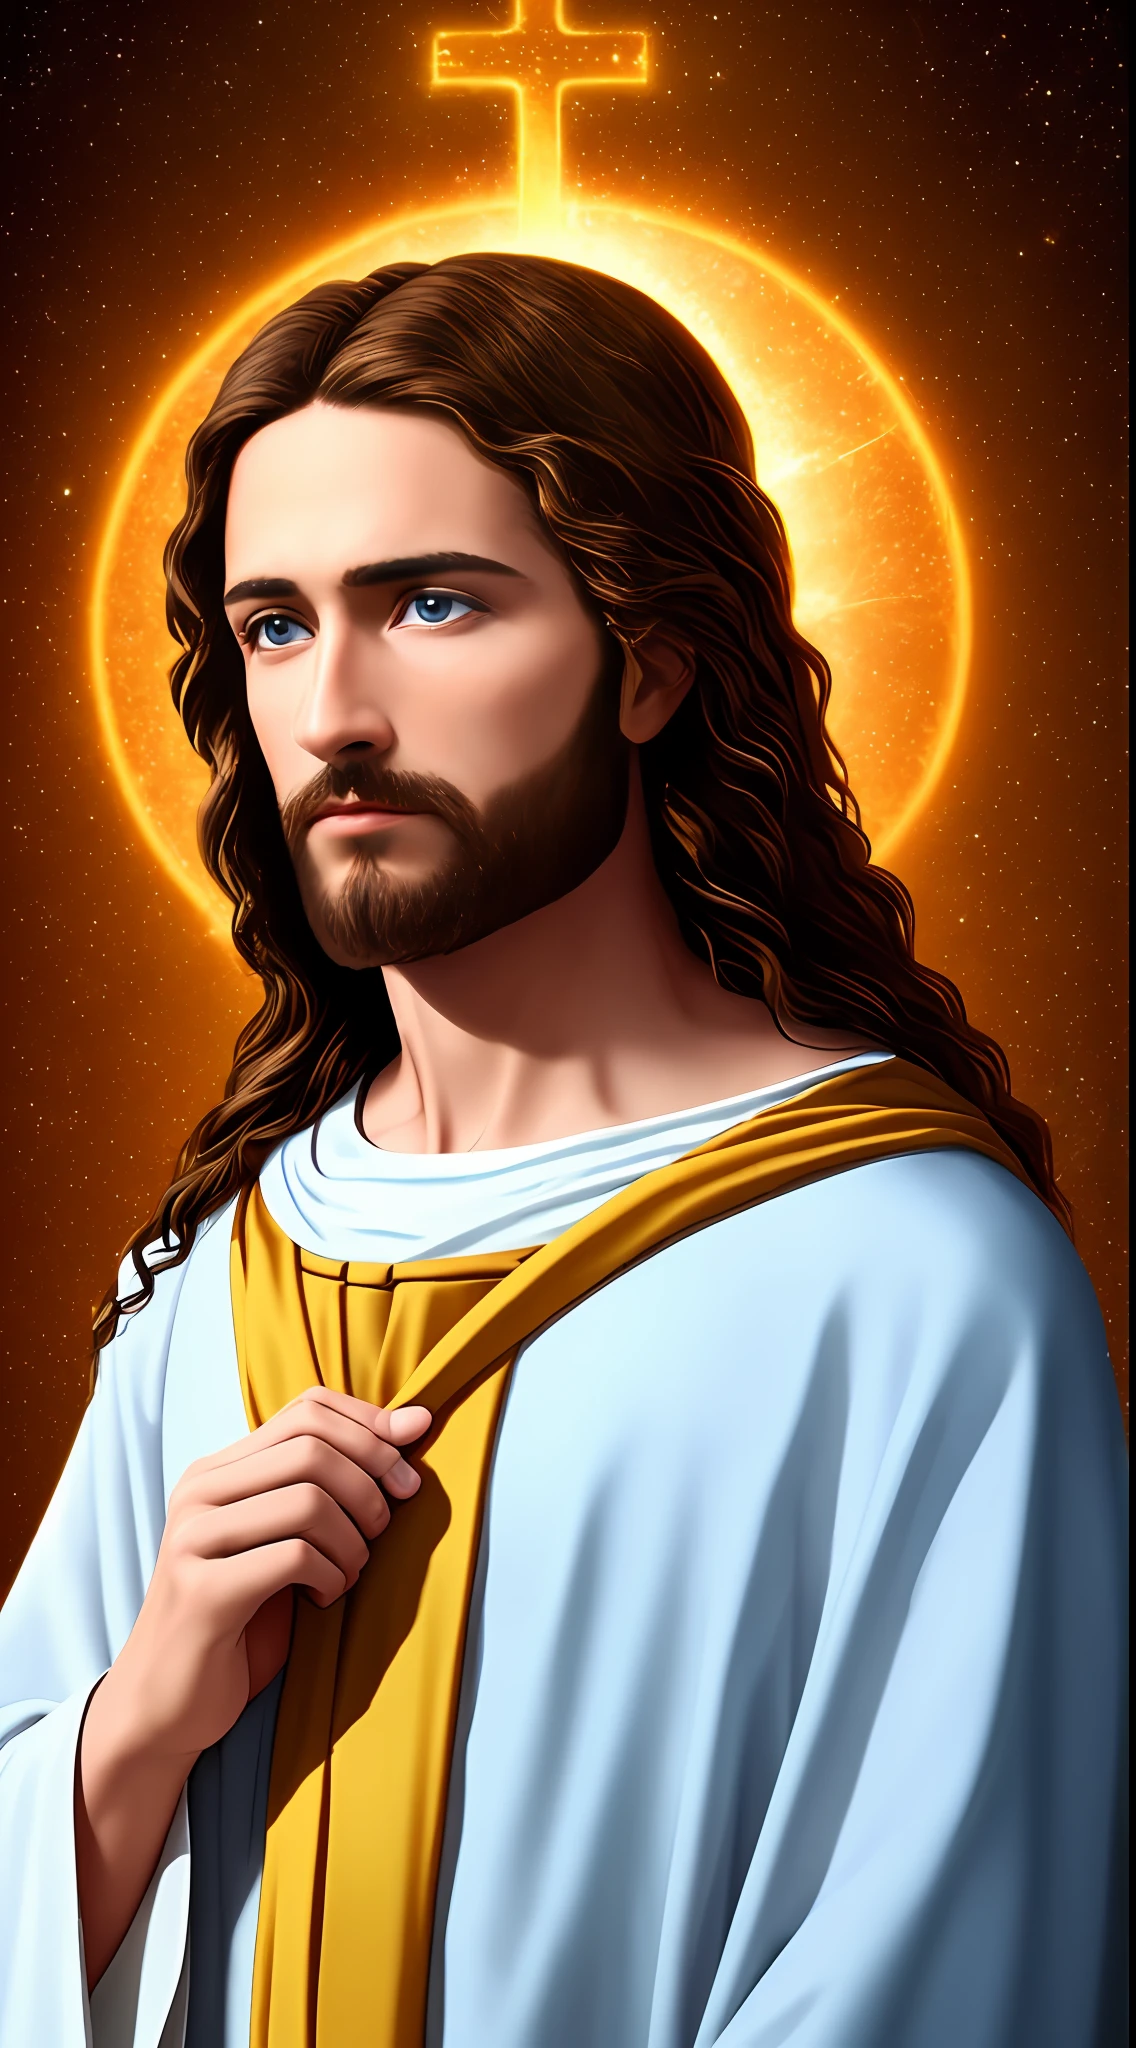 تصوير 8K 1 يسوع وسيم واحد, بركاته, منظر السماء يسوع, عيون زرقاء حقيقية, نعمة الناس يسوع